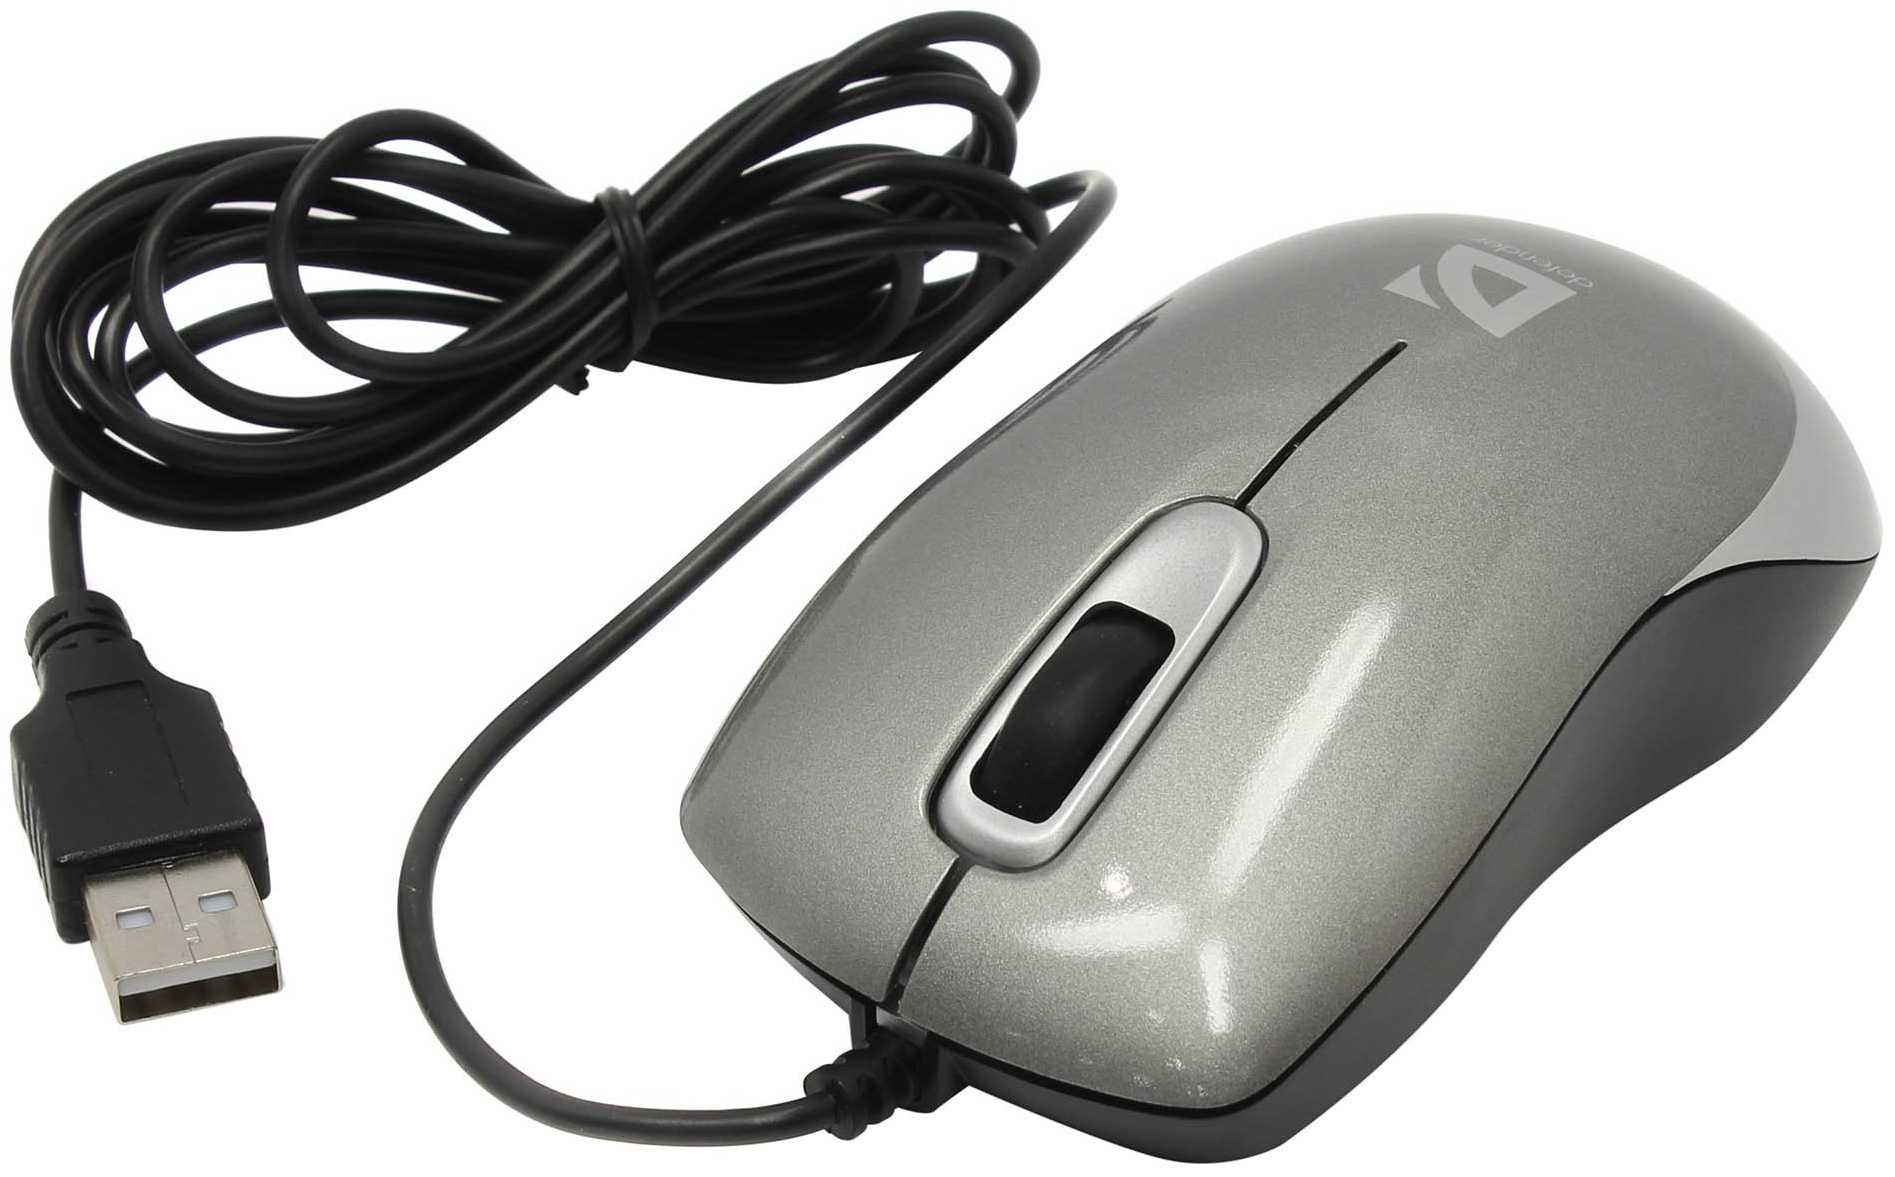 Компьютерная мышь defender orion 300 black - купить | цены | обзоры и тесты | отзывы | параметры и характеристики | инструкция